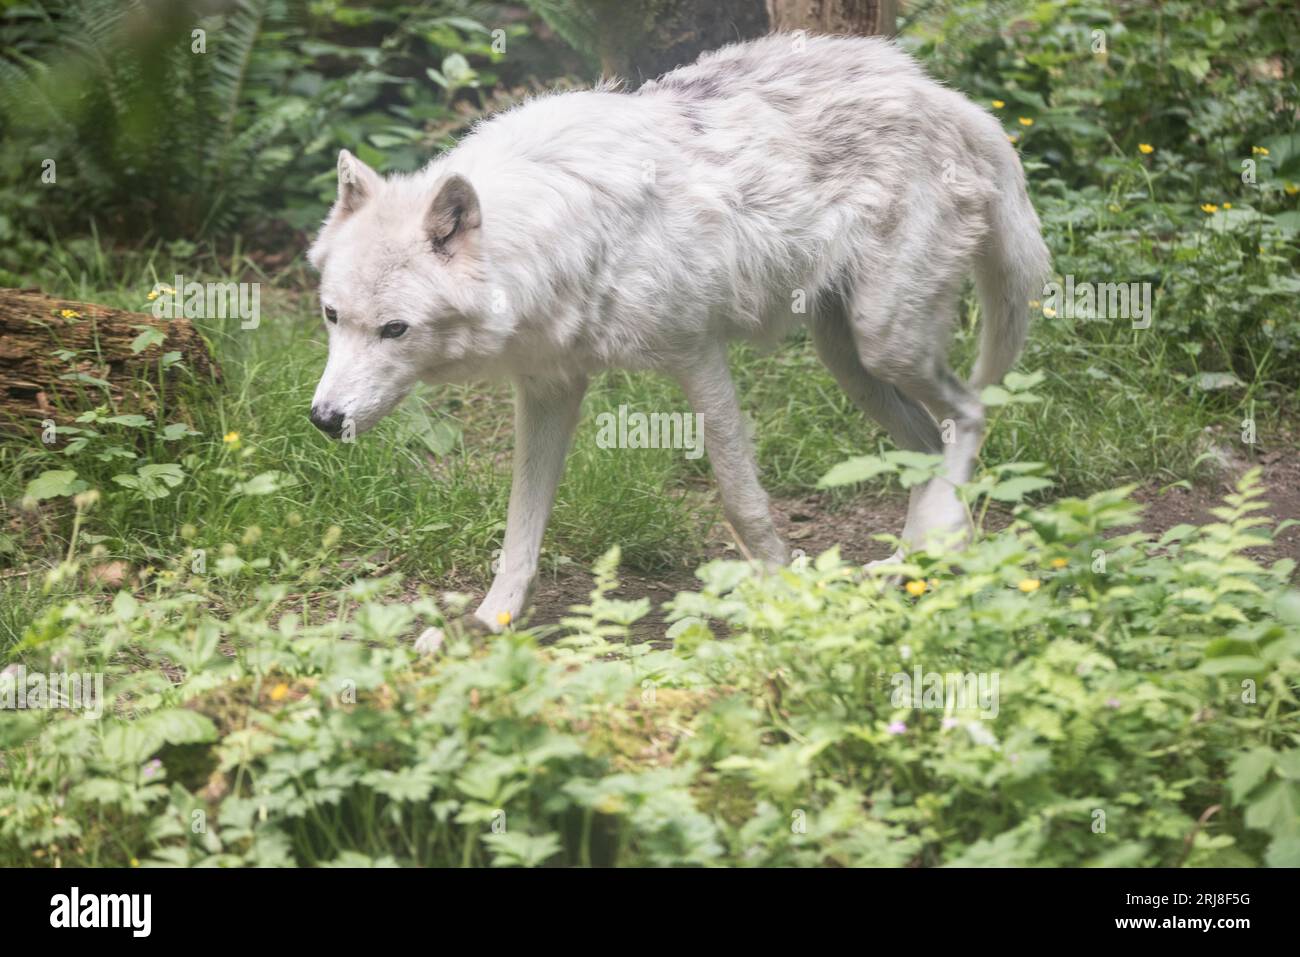 A captive white wolf standing/walking in a large enclosure, habitat included, northwest trek, graham, washington, usa Stock Photo